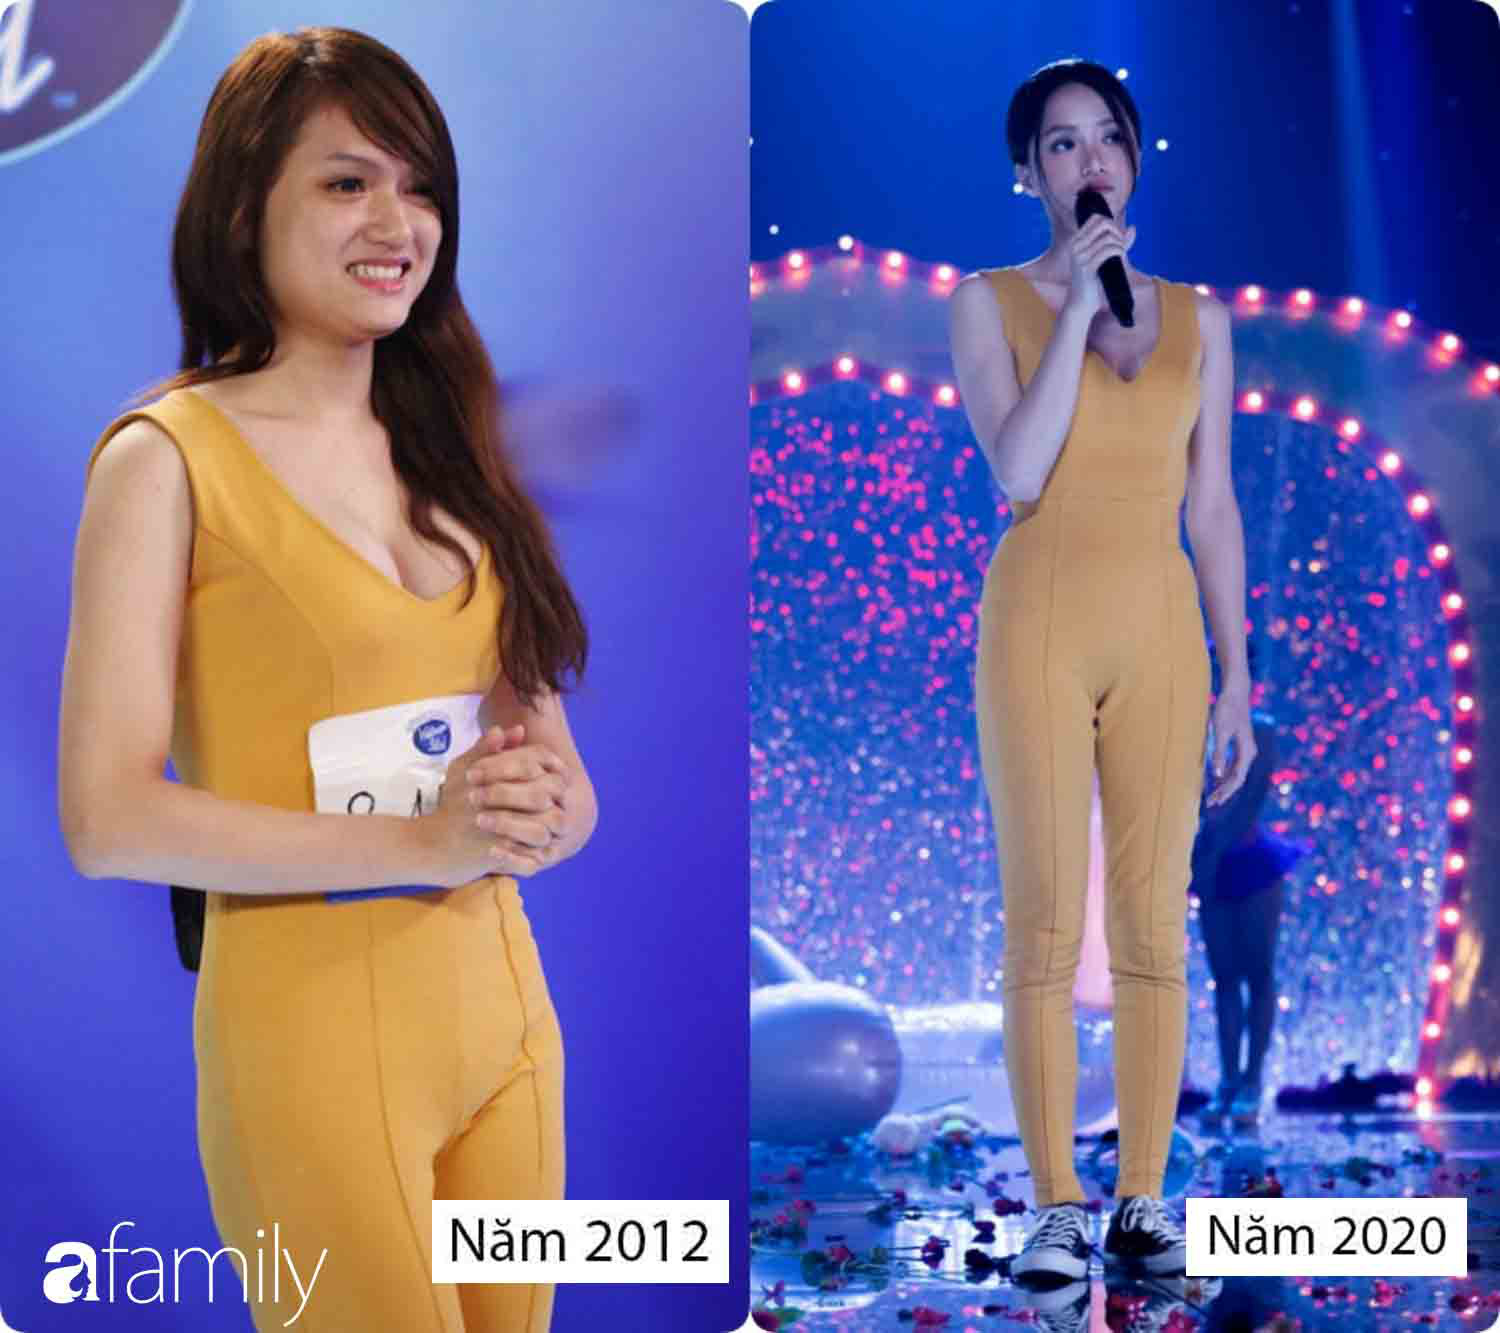 Diện lại bộ jumpsuit từ thời Việt Nam Idol, body gợi cảm quyến rũ và nhan sắc xinh đẹp của Hương Giang 8 năm sau mới là điều gây bất ngờ nhất - Ảnh 6.